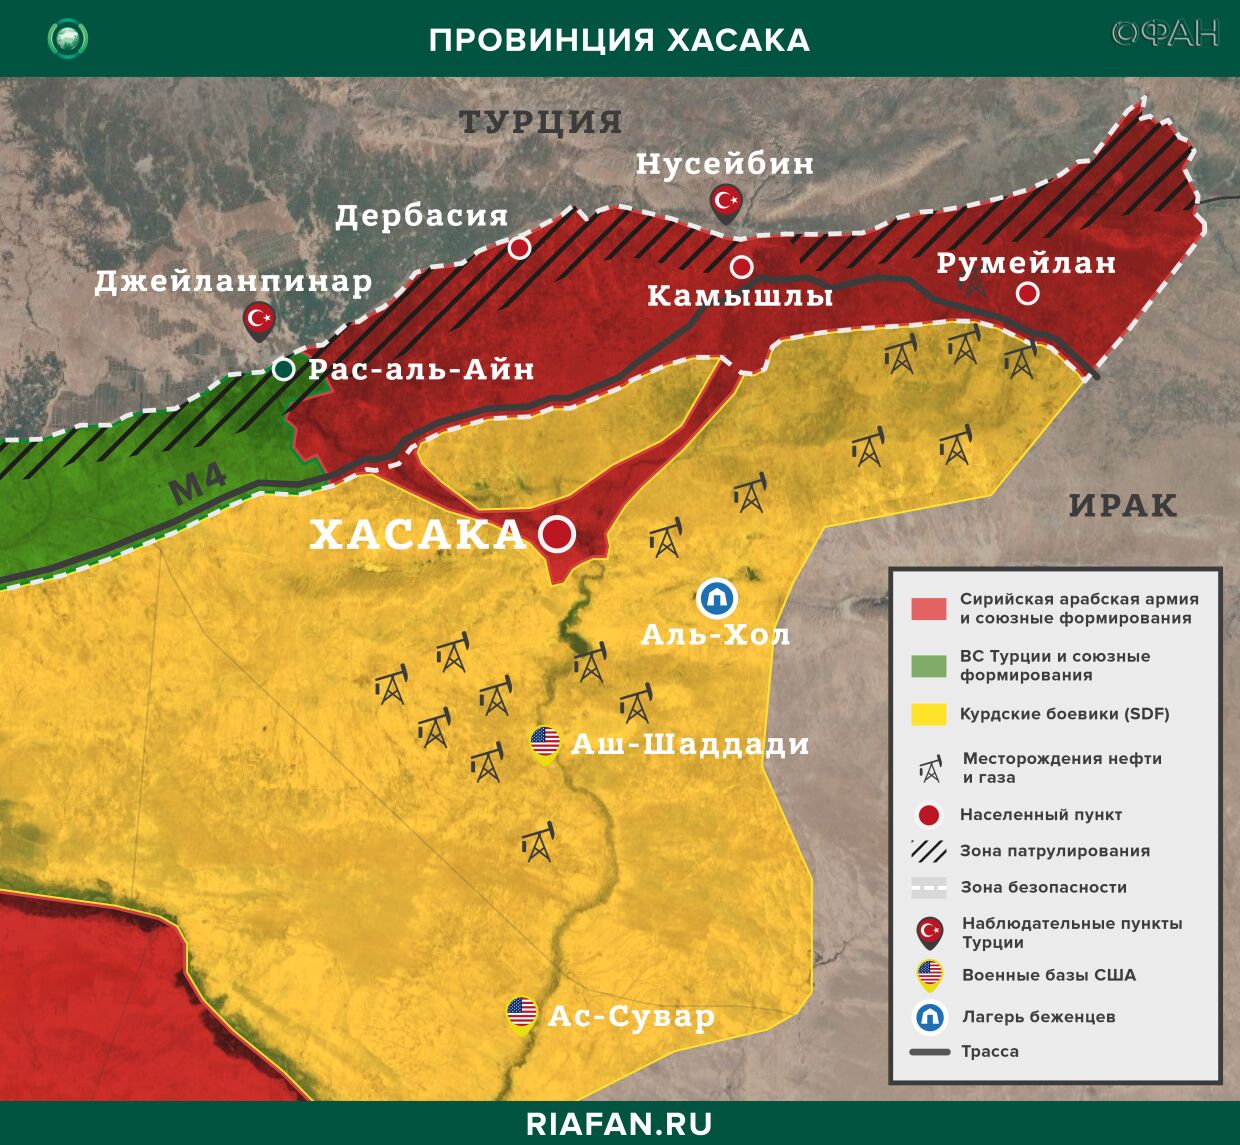 叙利亚新闻 31 七月 22.30: 土耳其的盟友炮击了哈萨卡的一个村庄, HTS 袭击了伊德利卜的 SAA